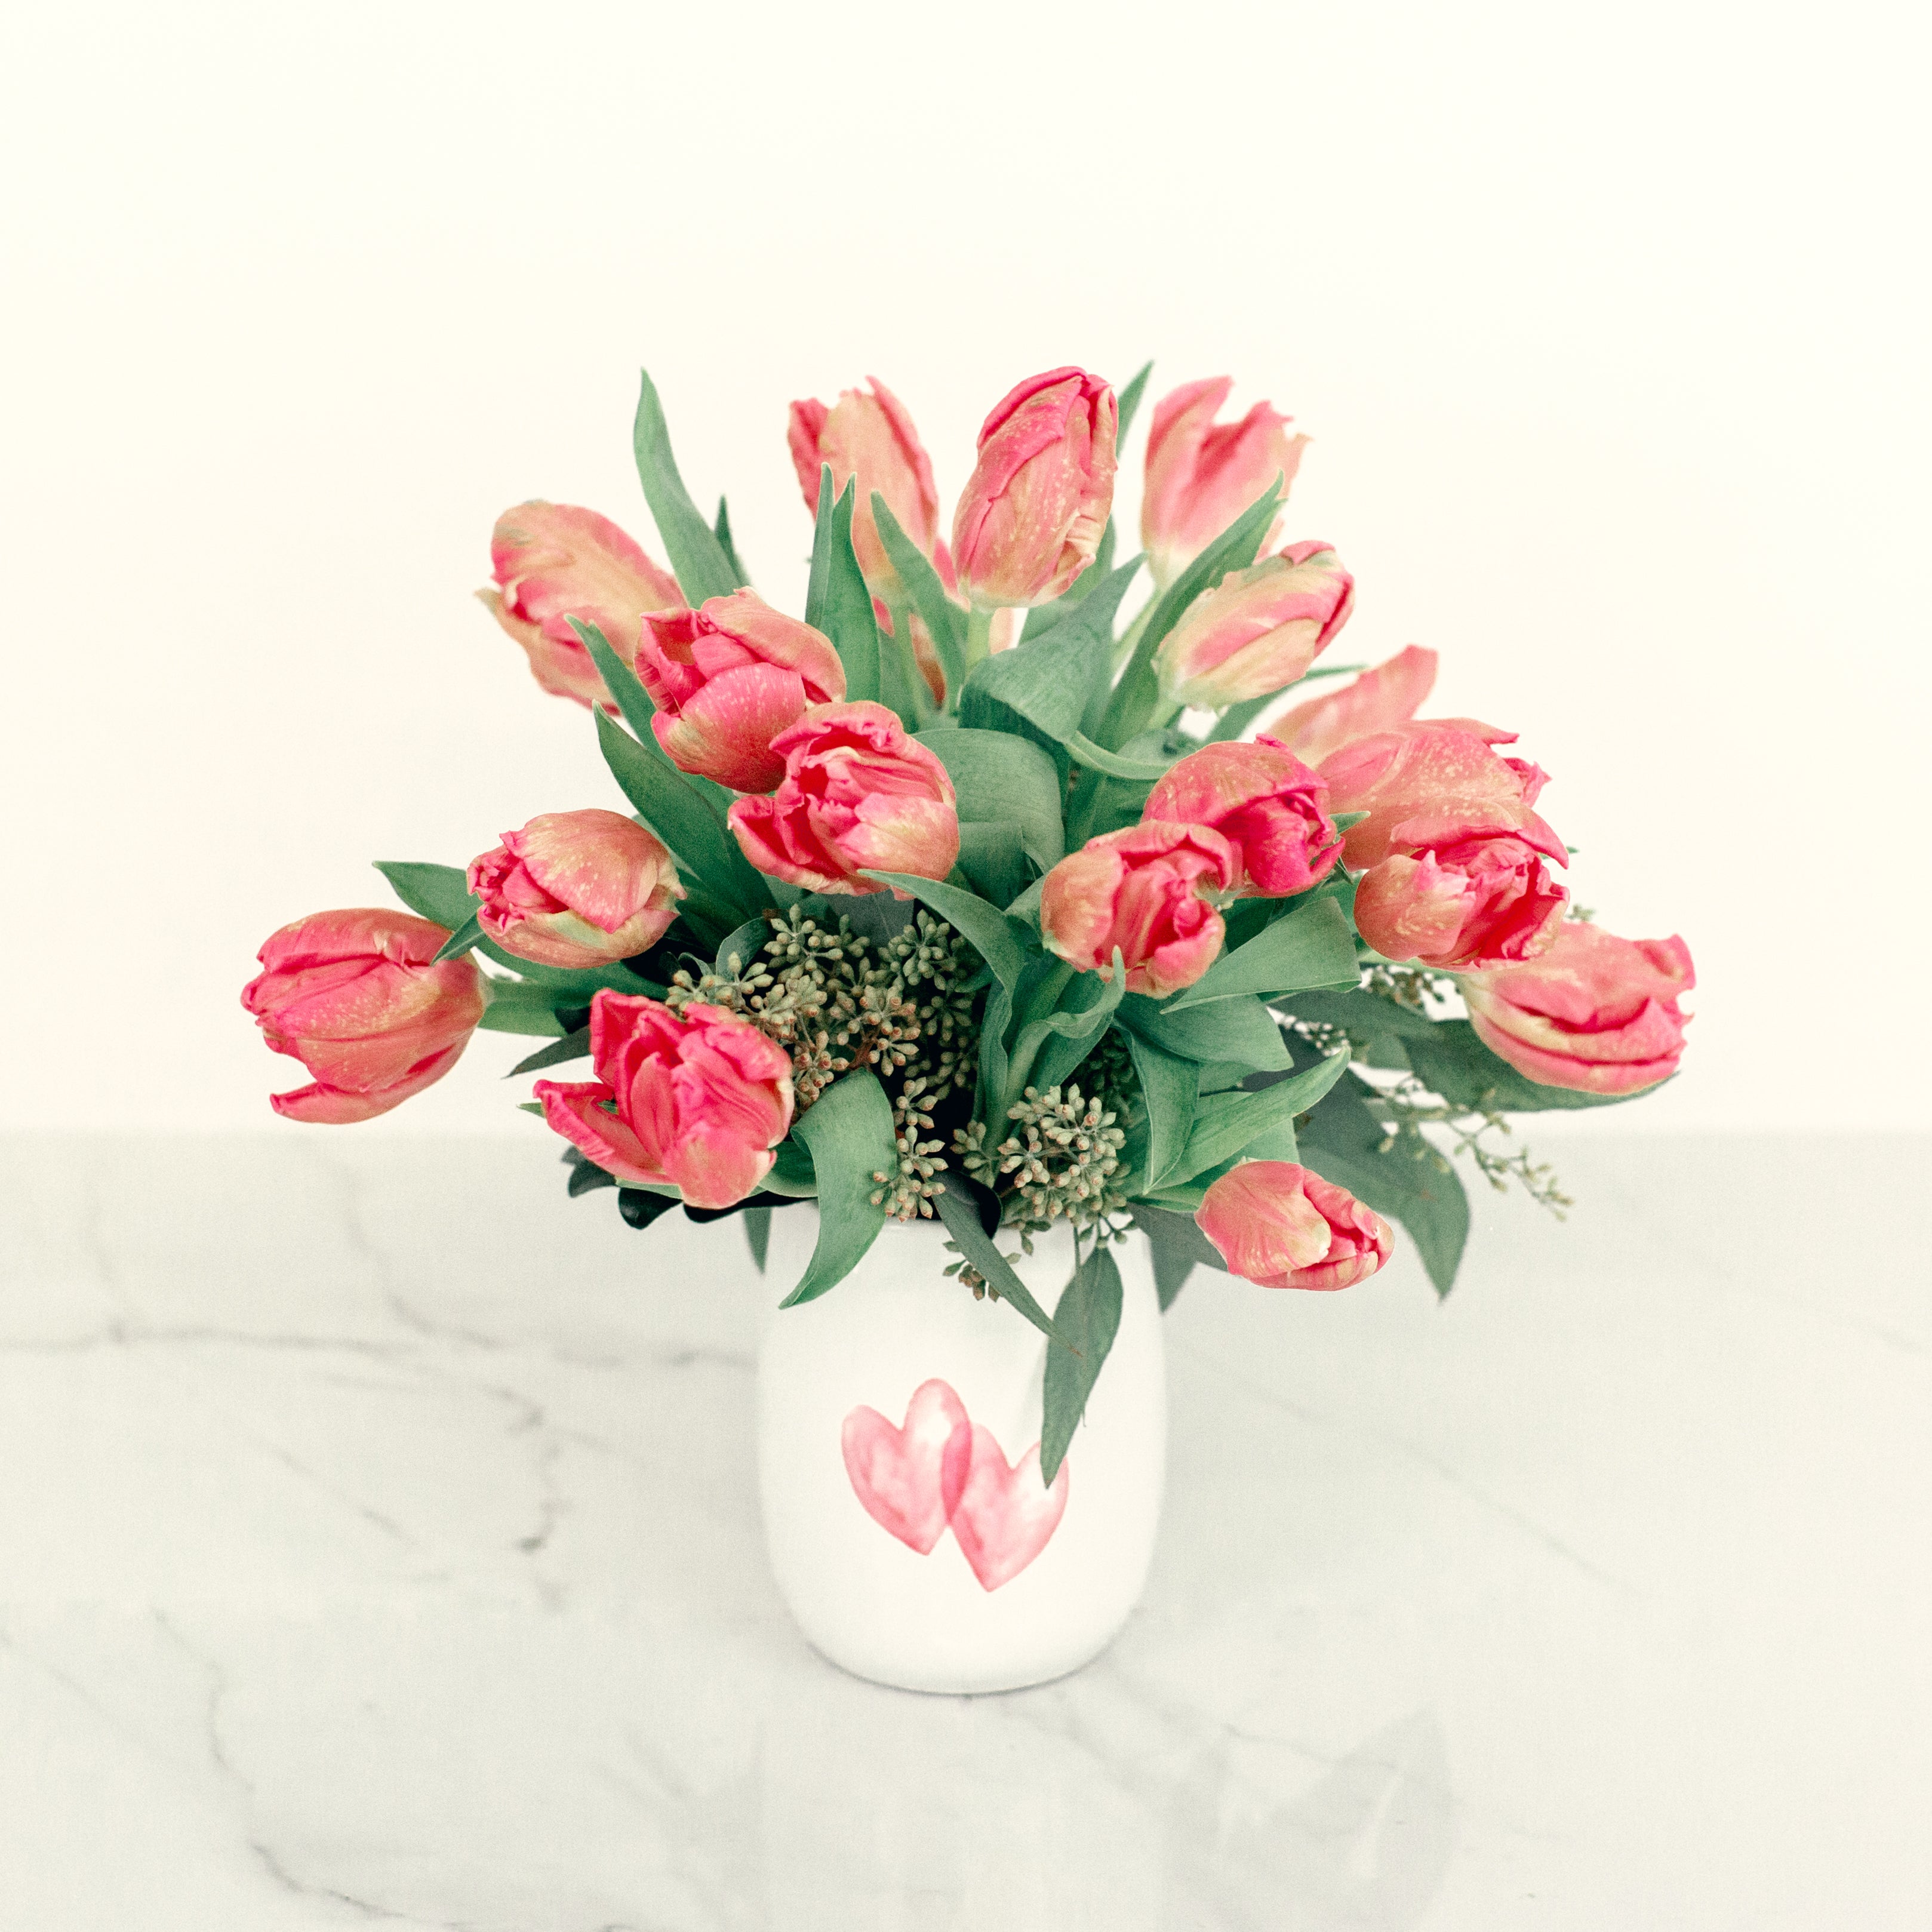 Impress with a Unique Money Bouquet of Cash - Flower Creations